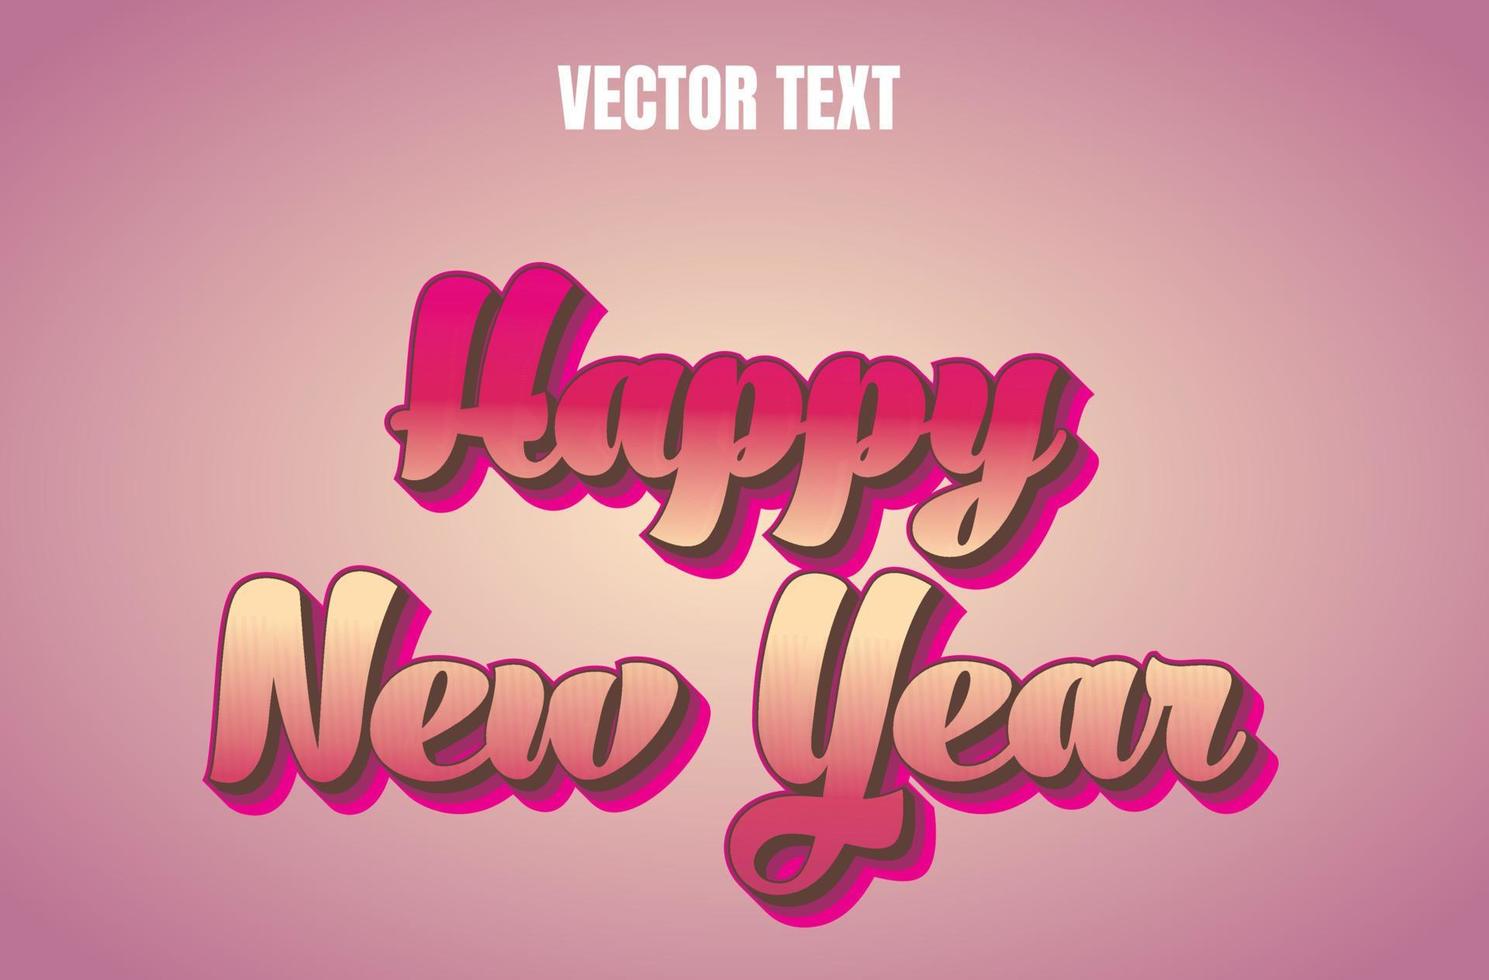 Vektortexteffekt des neuen Jahres vektor